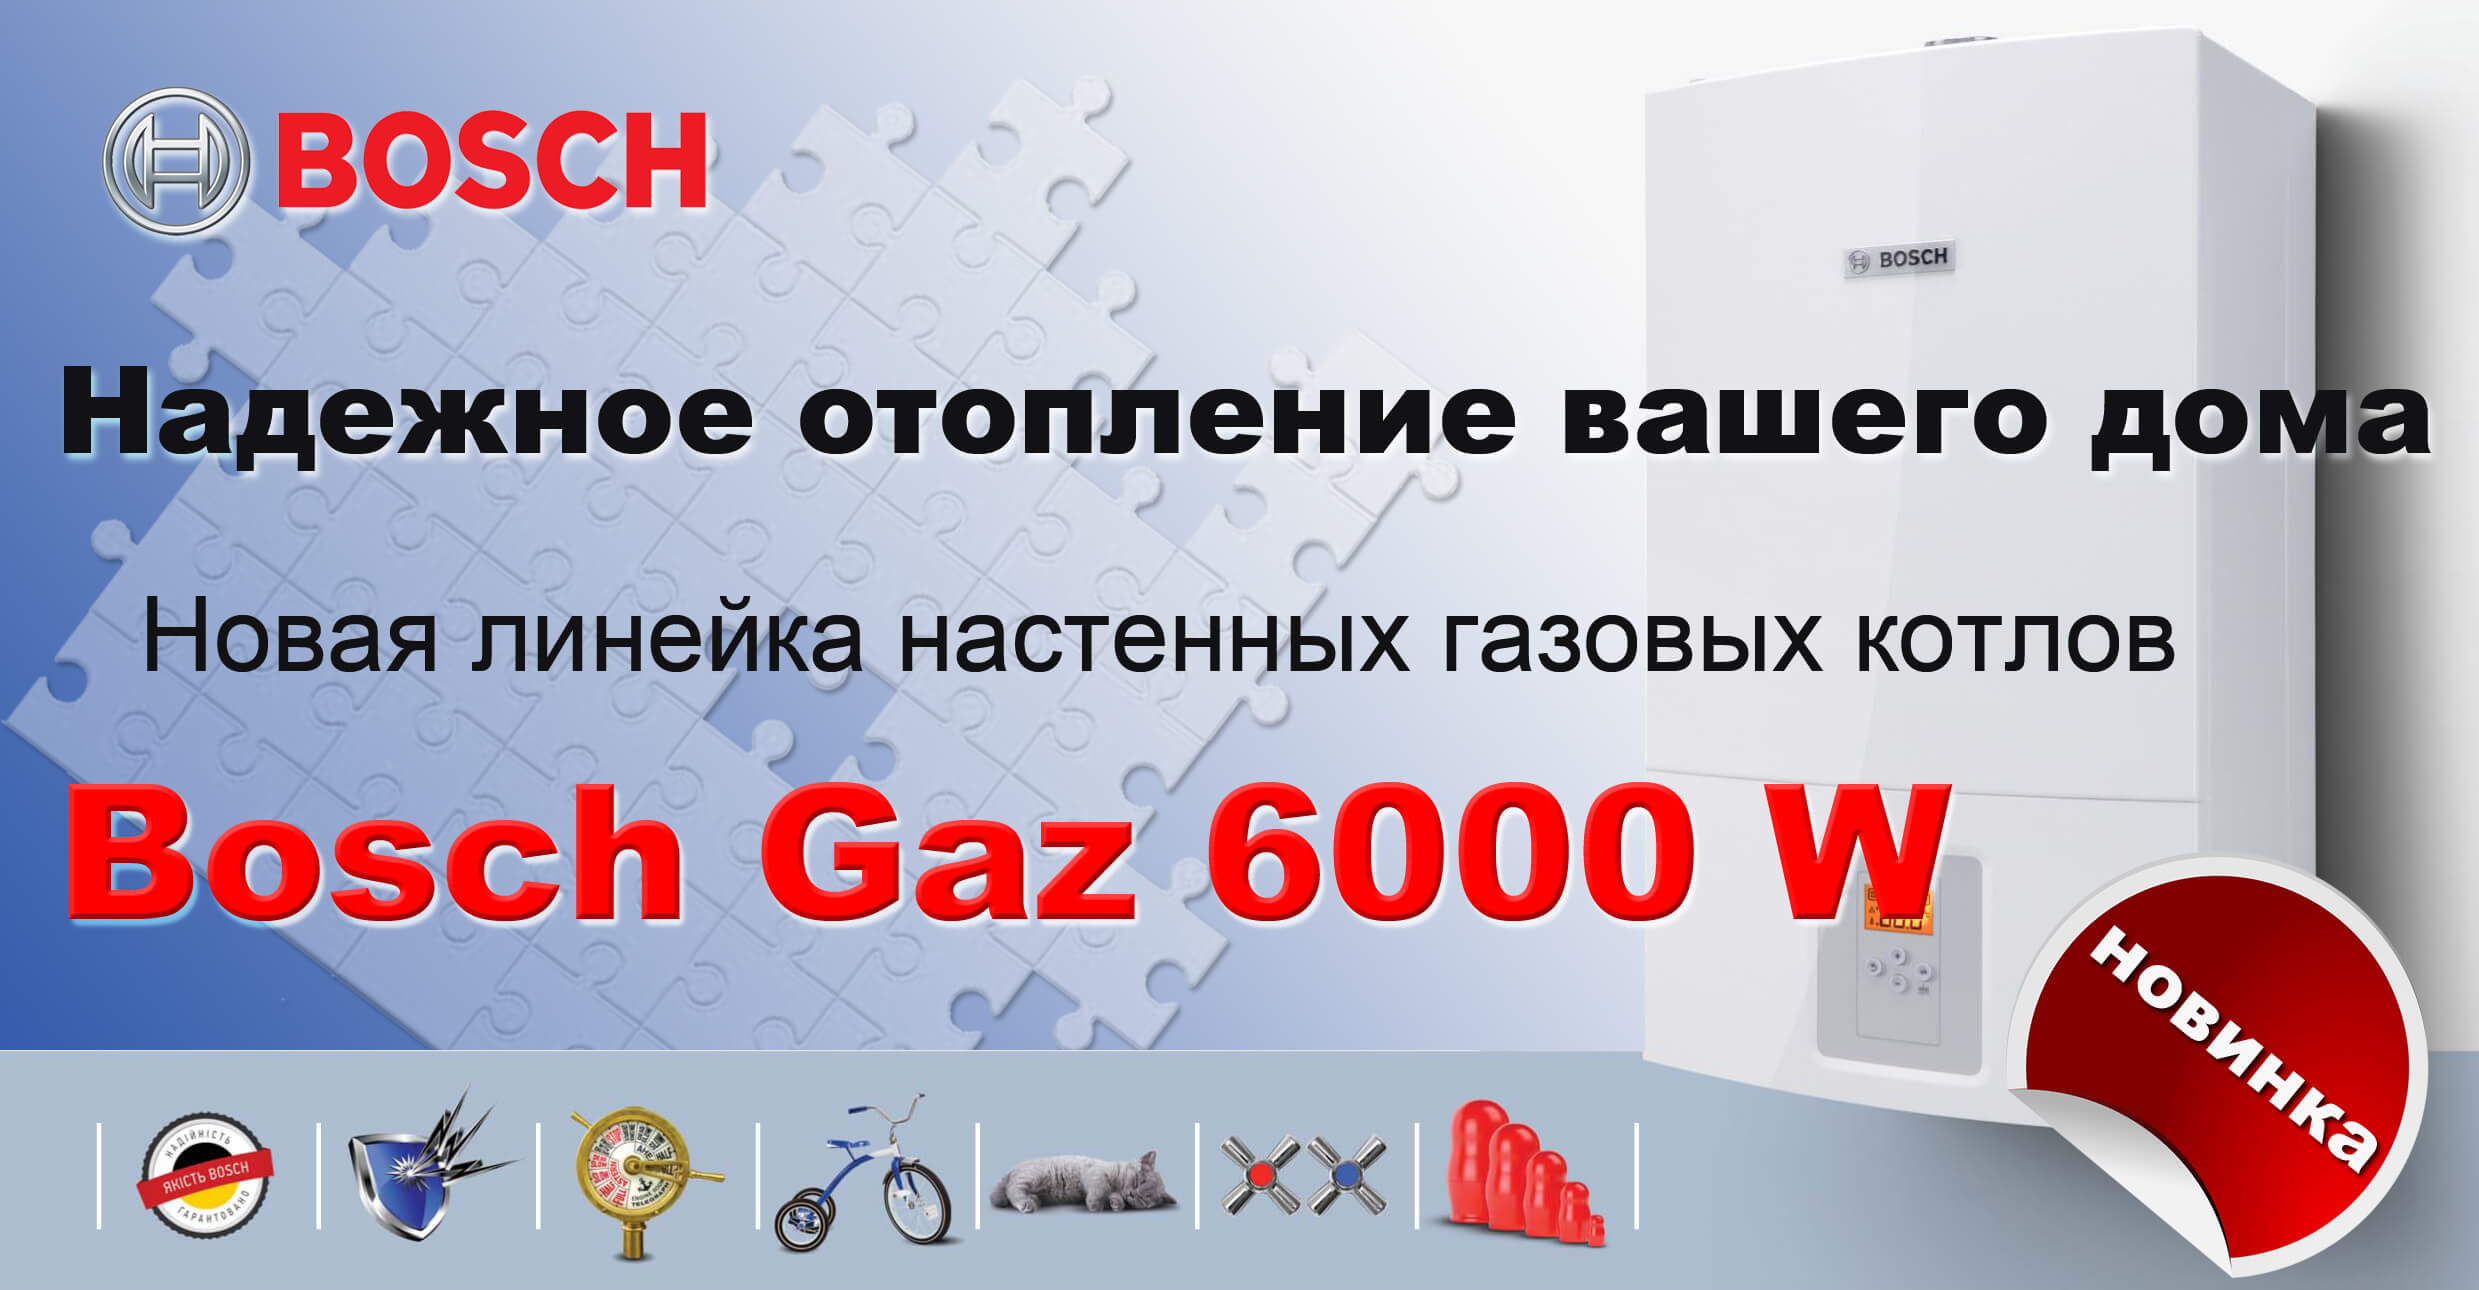 Bosch Gaz 6000